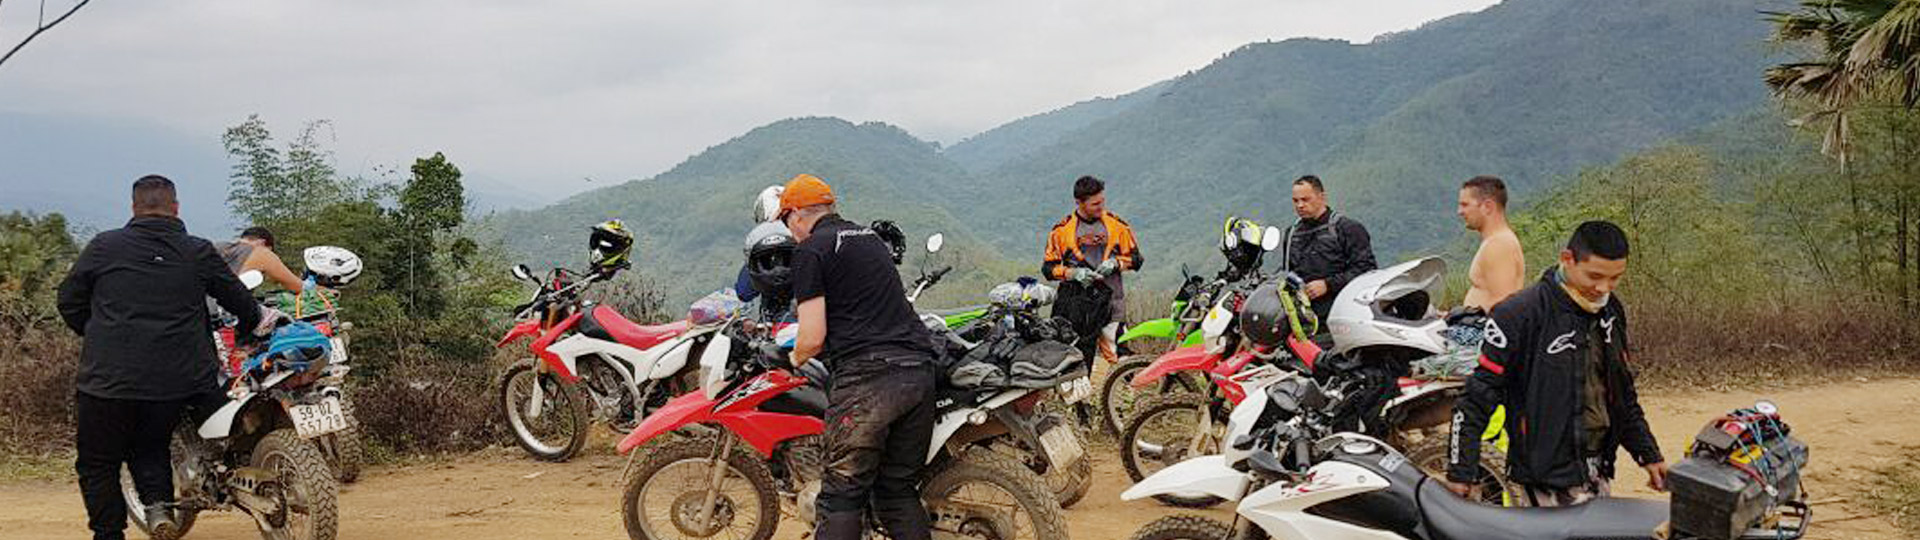 Yangon Motorbike Tour To Bagan - 4 days